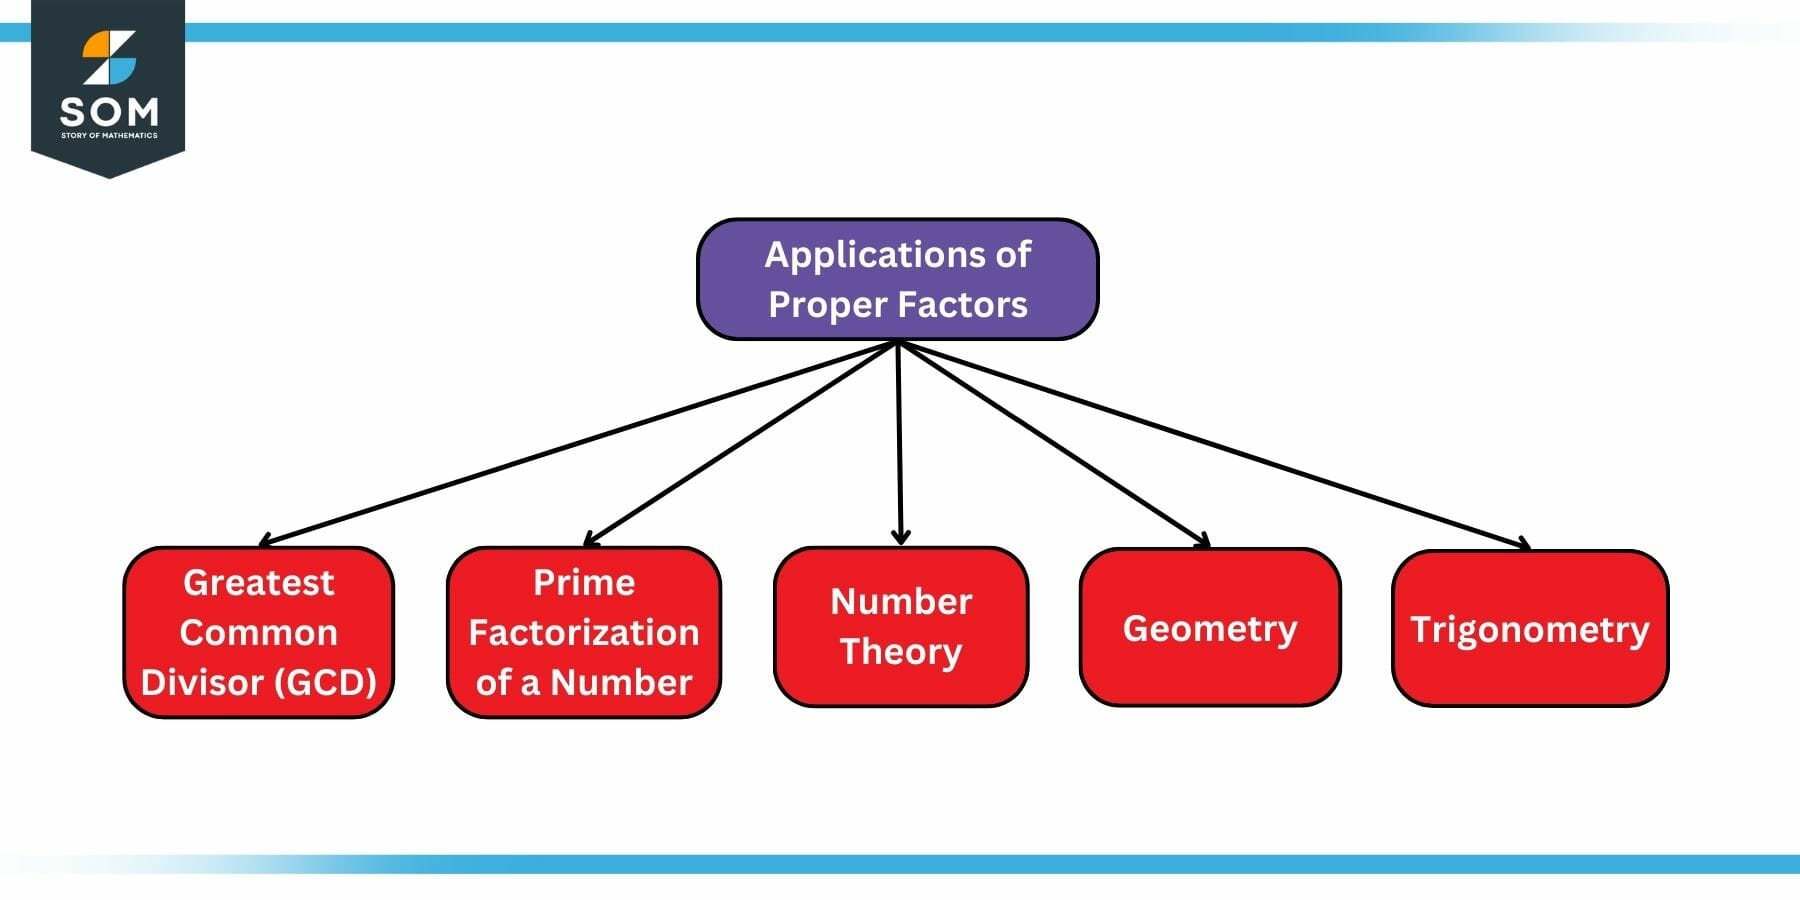 Applications of Proper Factors